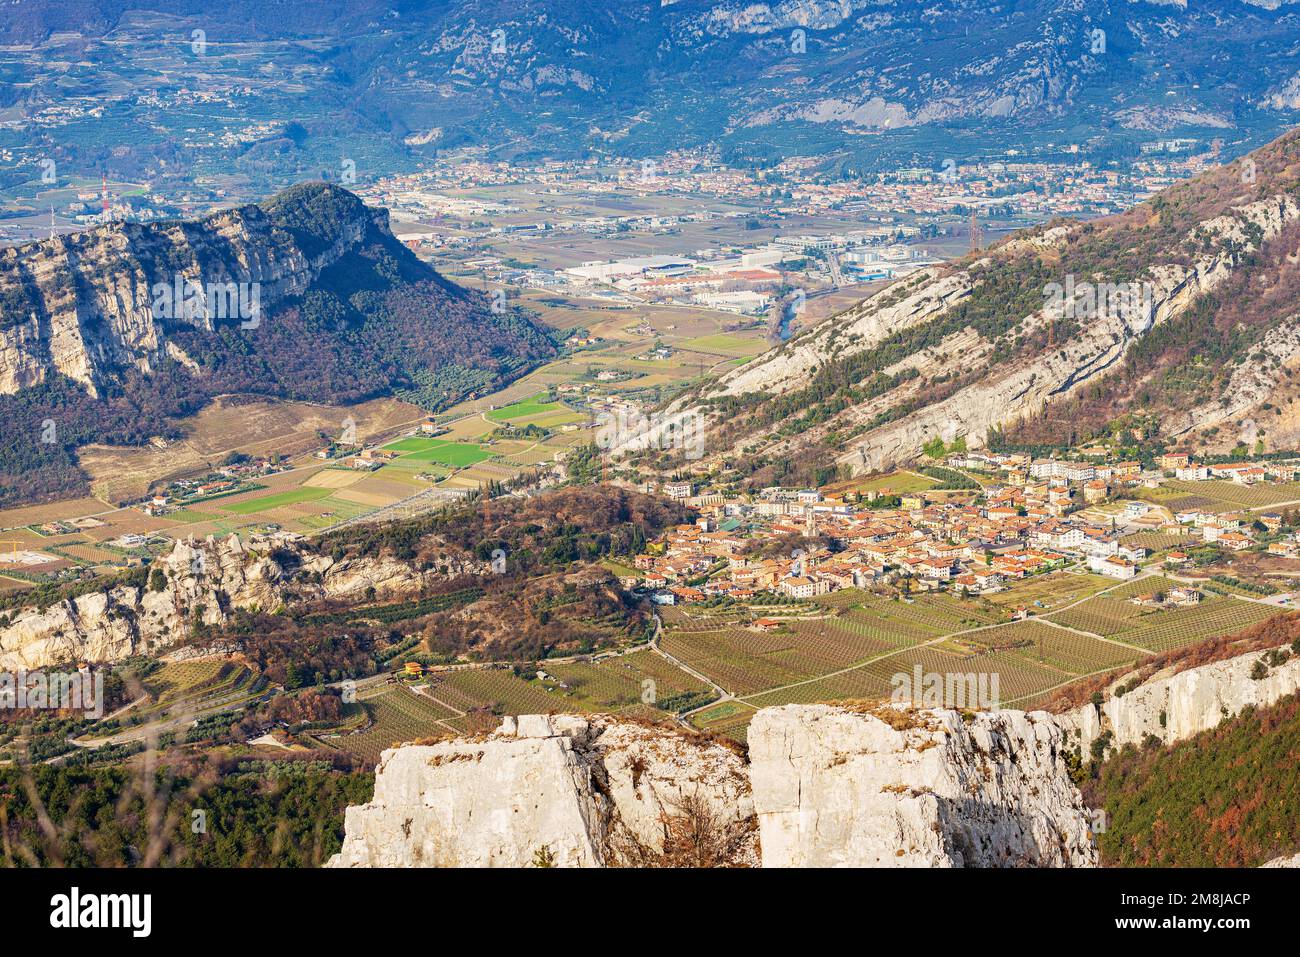 Veduta aerea dei paesini di Nago-Torbole e Riva del Garda, dalla catena montuosa del Monte Baldo (Monte Altissimo di Nago), Trentino, Italia. Foto Stock